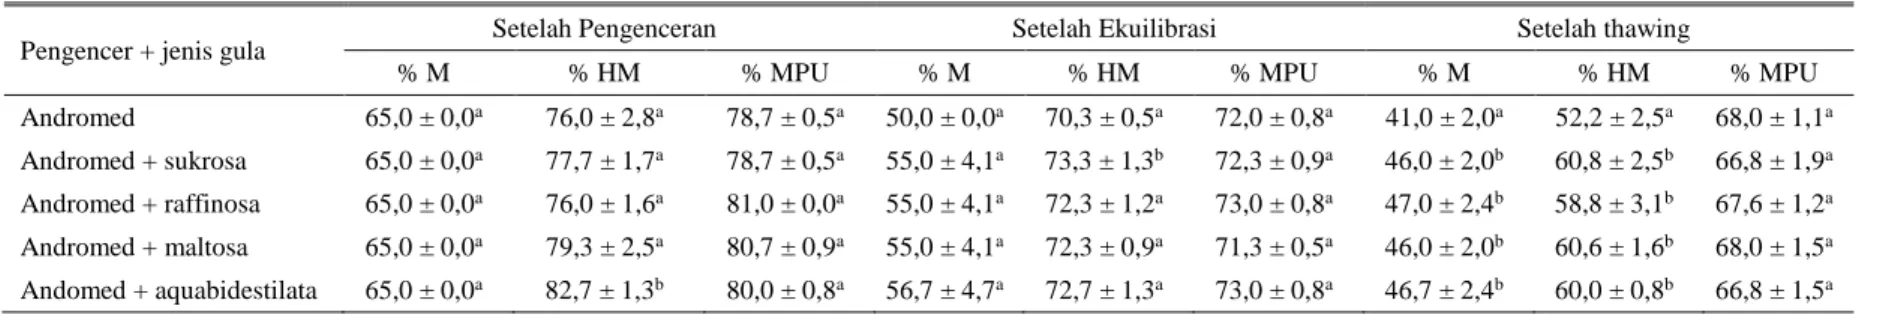 Tabel 2. Rataan kualitas sperma epididimis kerbau belang dalam pengencer andromed yang mendapat penambahan berbagai jenis gula 